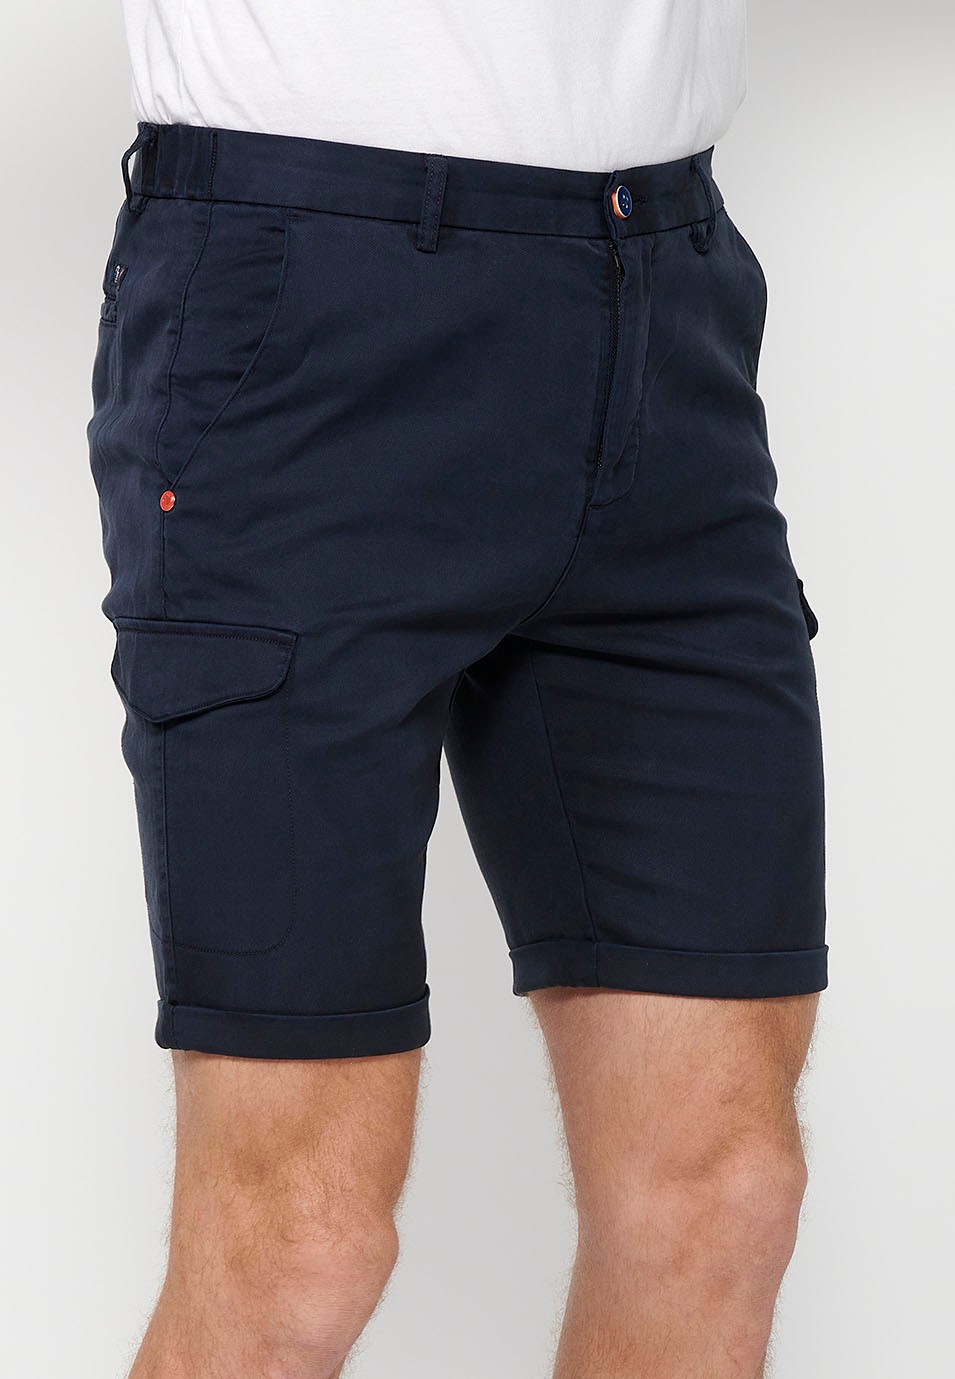 Pantalón corto con Cintura engomada y cierre con cremallera y botón con Bolsillos, dos laterales con solapa de Color Navy para Hombre